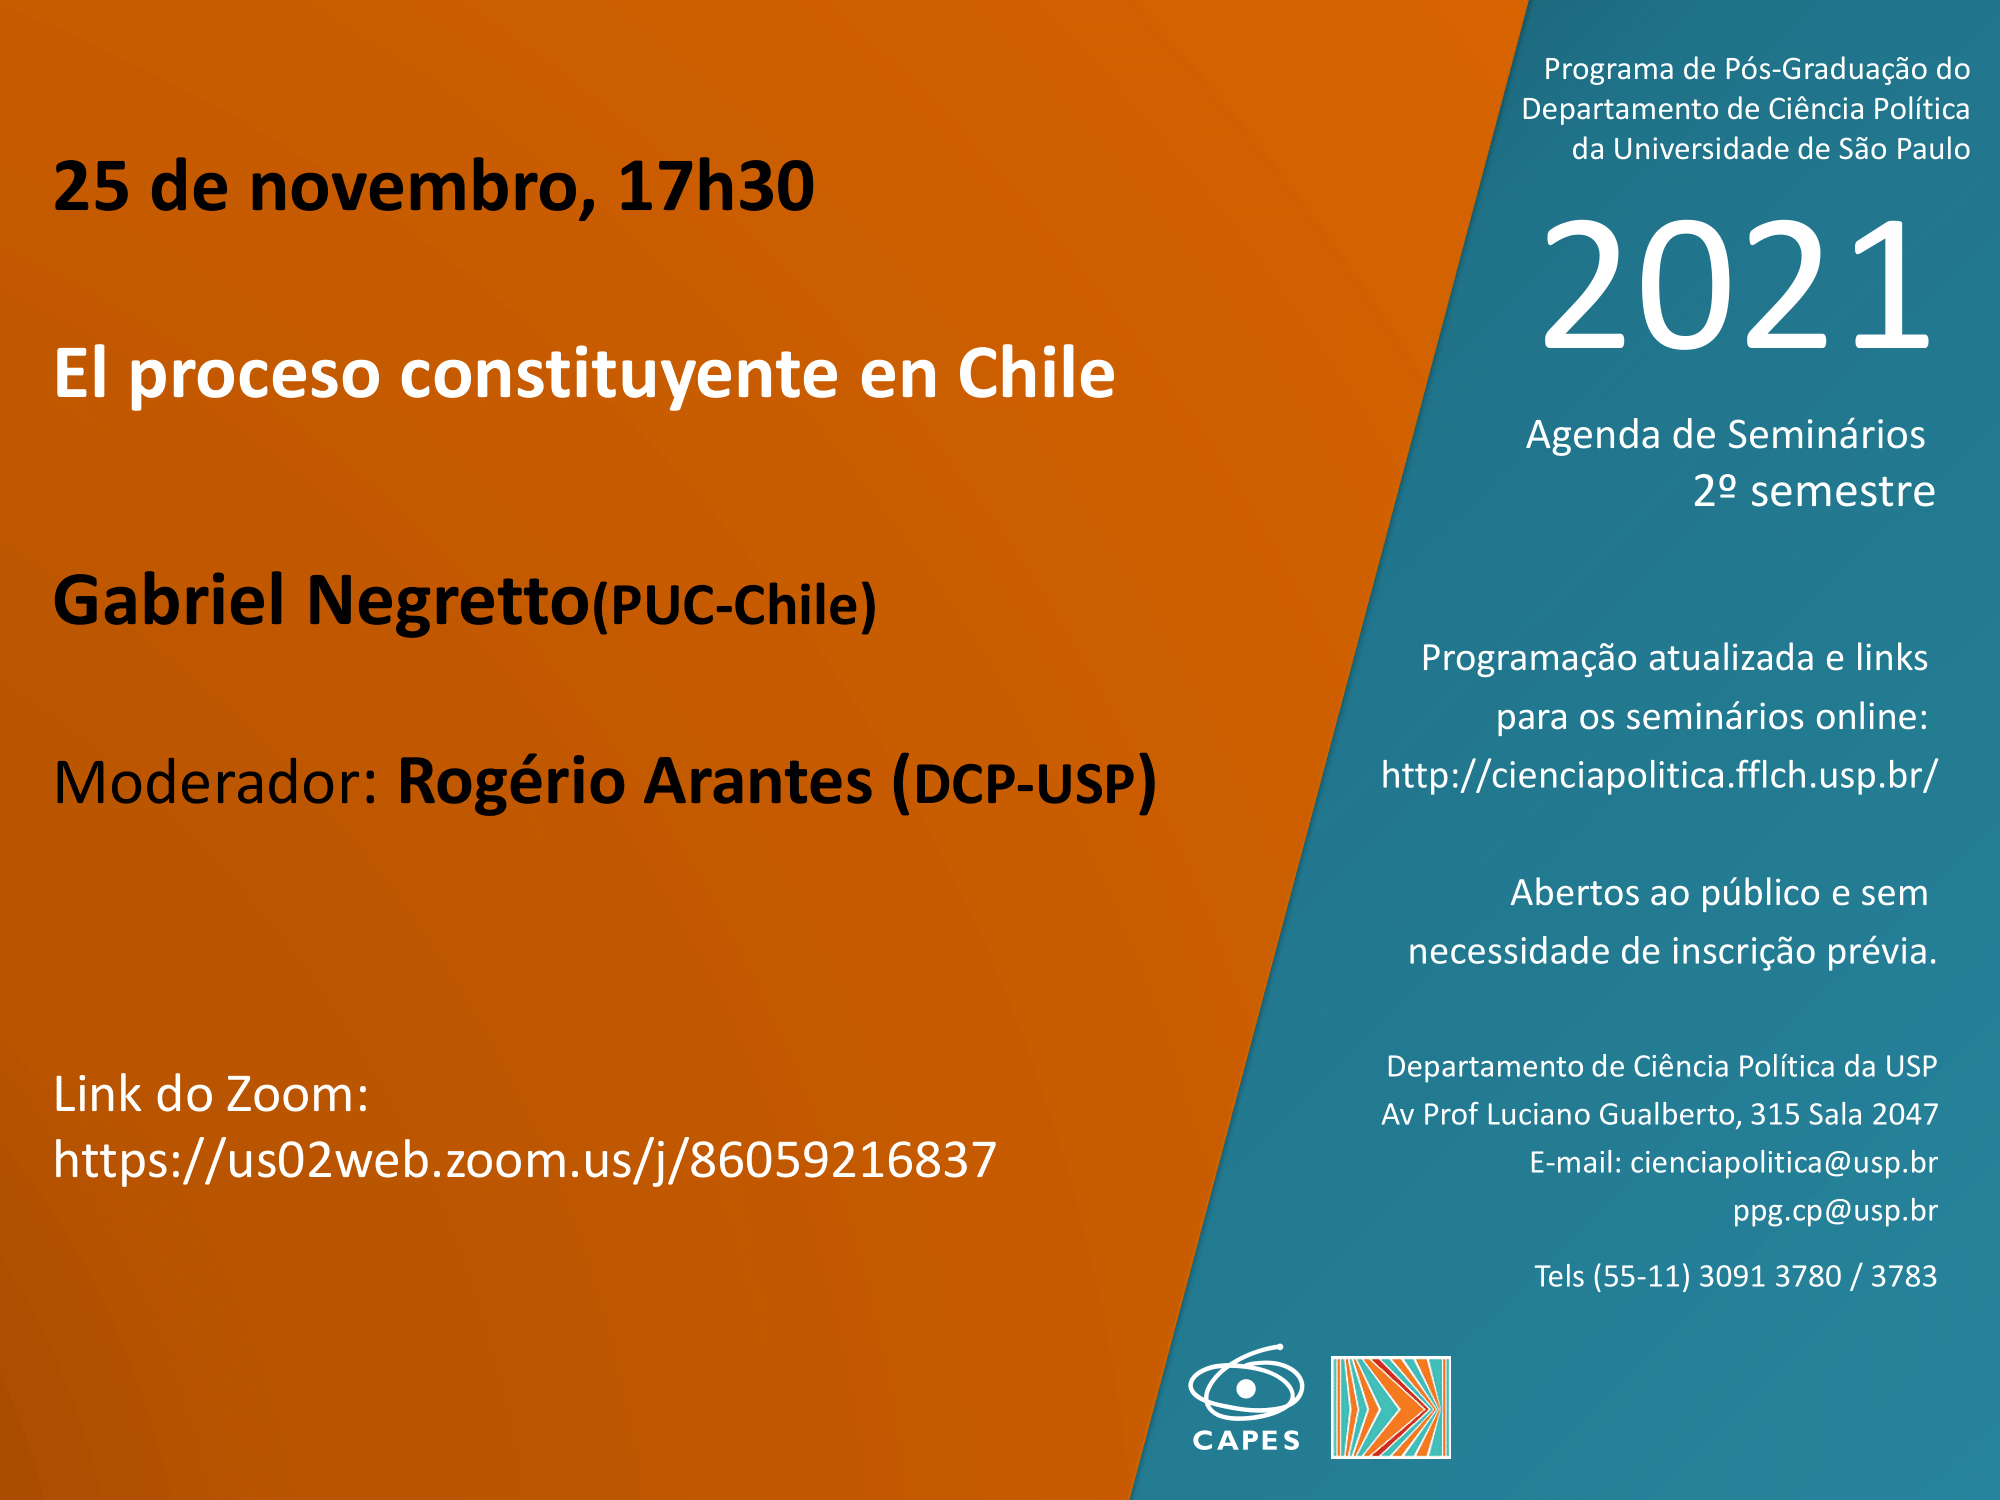 “El proceso constituyente en Chile"